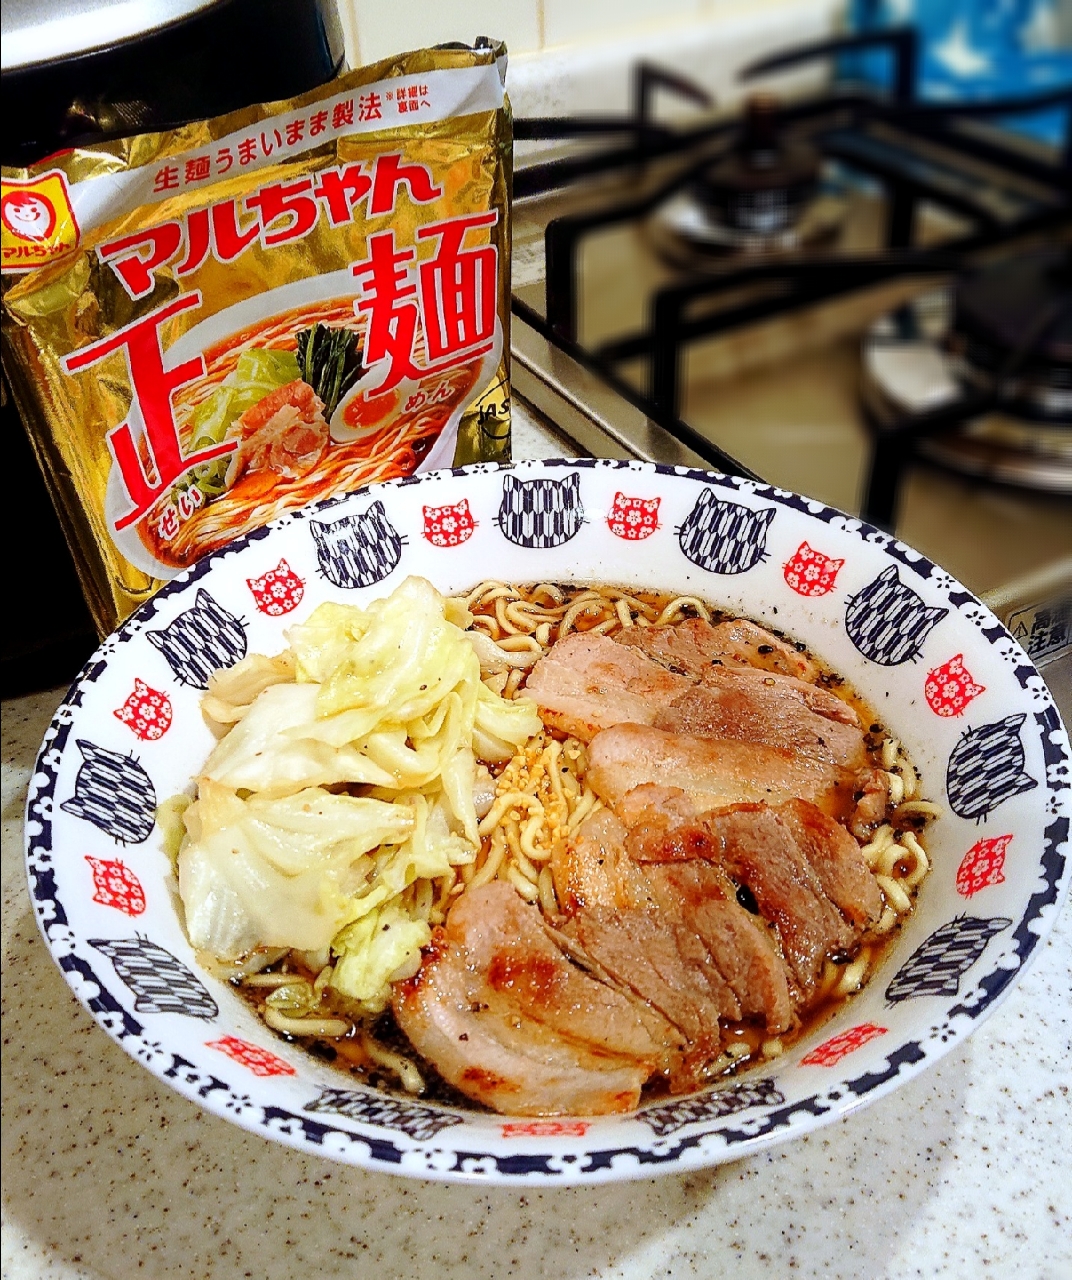 マルちゃん正麺🍜醤油味
#豚バラ&キャベツ
#にんにく
#お昼ごはん
#2021/8/11